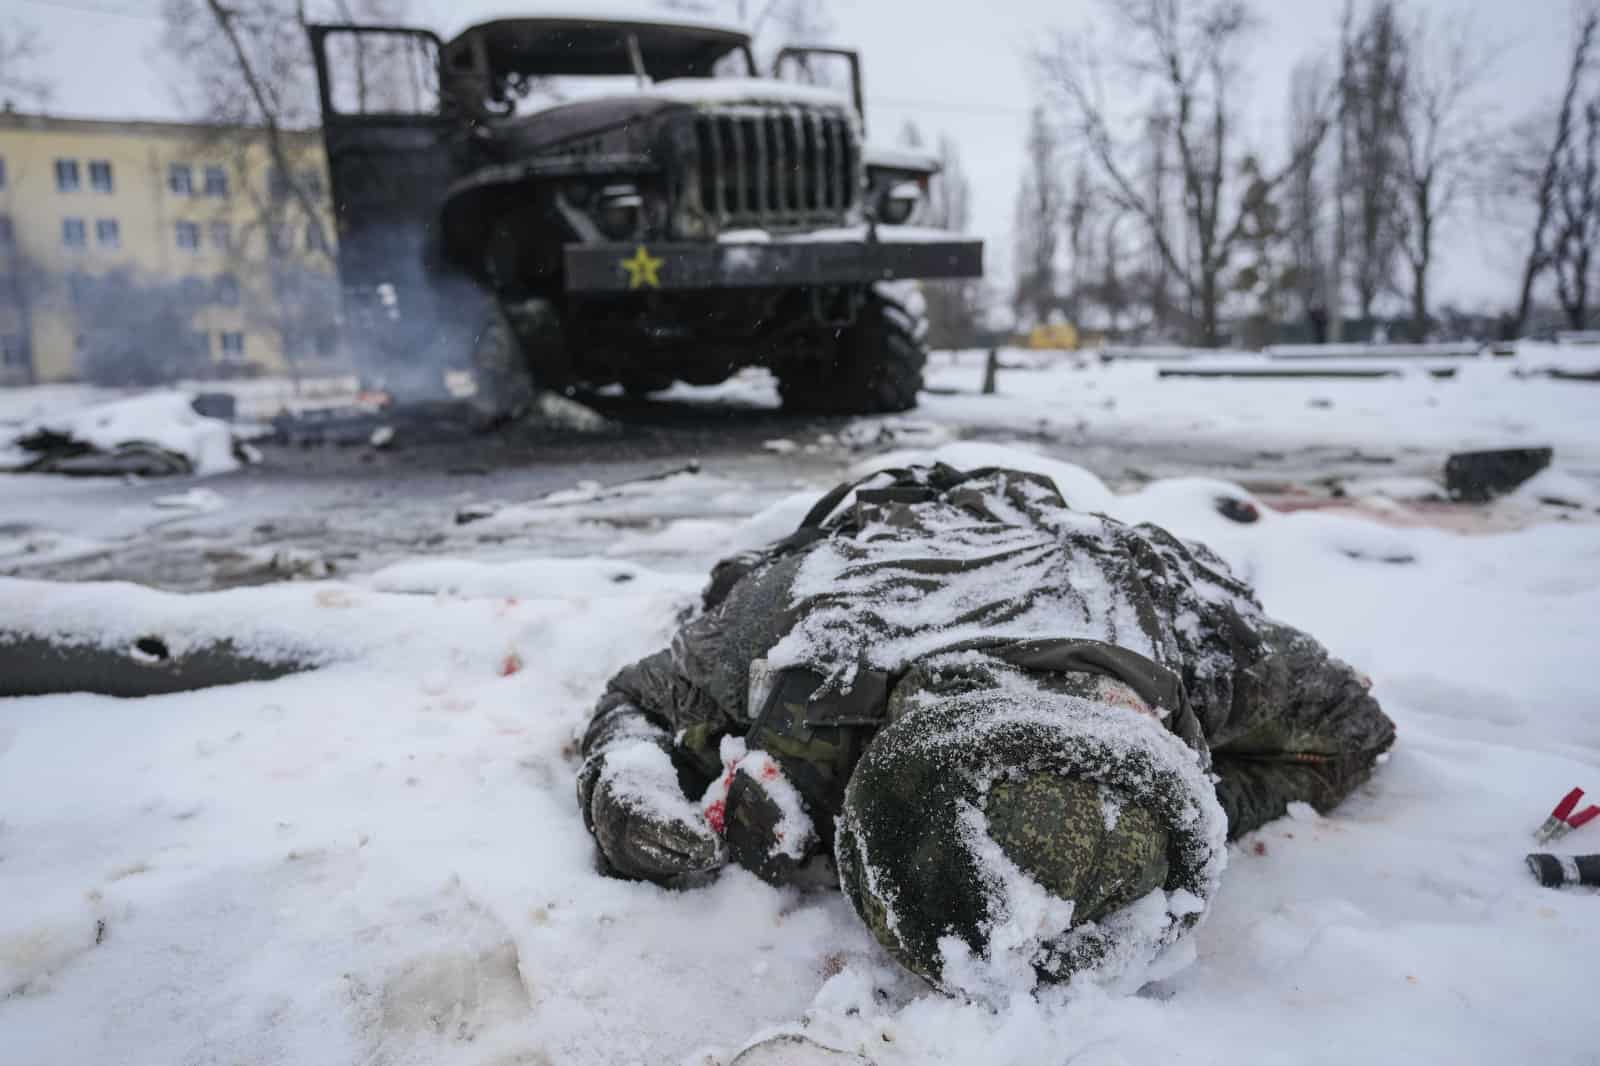 Archivo - El cadáver de un militar ruso yace boca abajo en la nieve junto a un destruido vehículo lanzacohetes del ejército ruso en las afueras de Járkiv, Ucrania, el 25 de febrero de 2022.